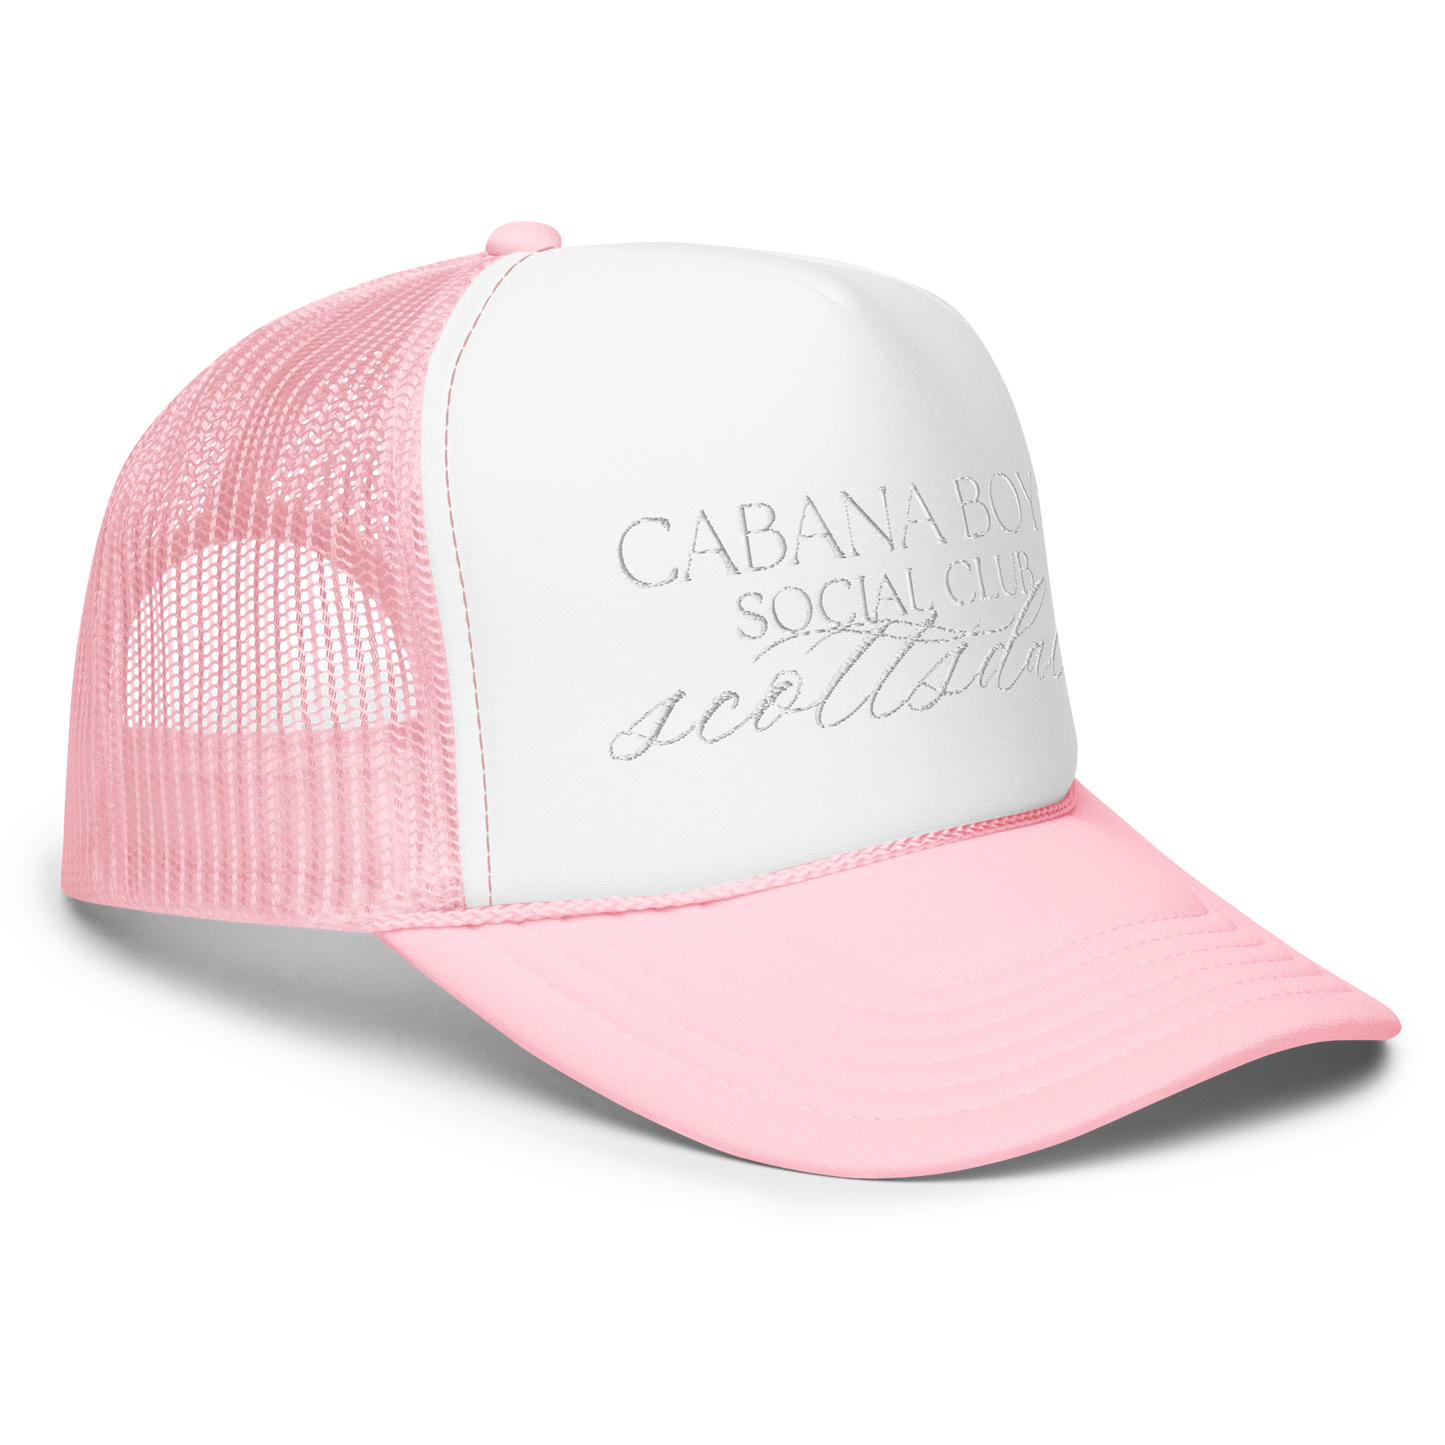 Social Club Foam Trucker Hat - Pink, White, Navy